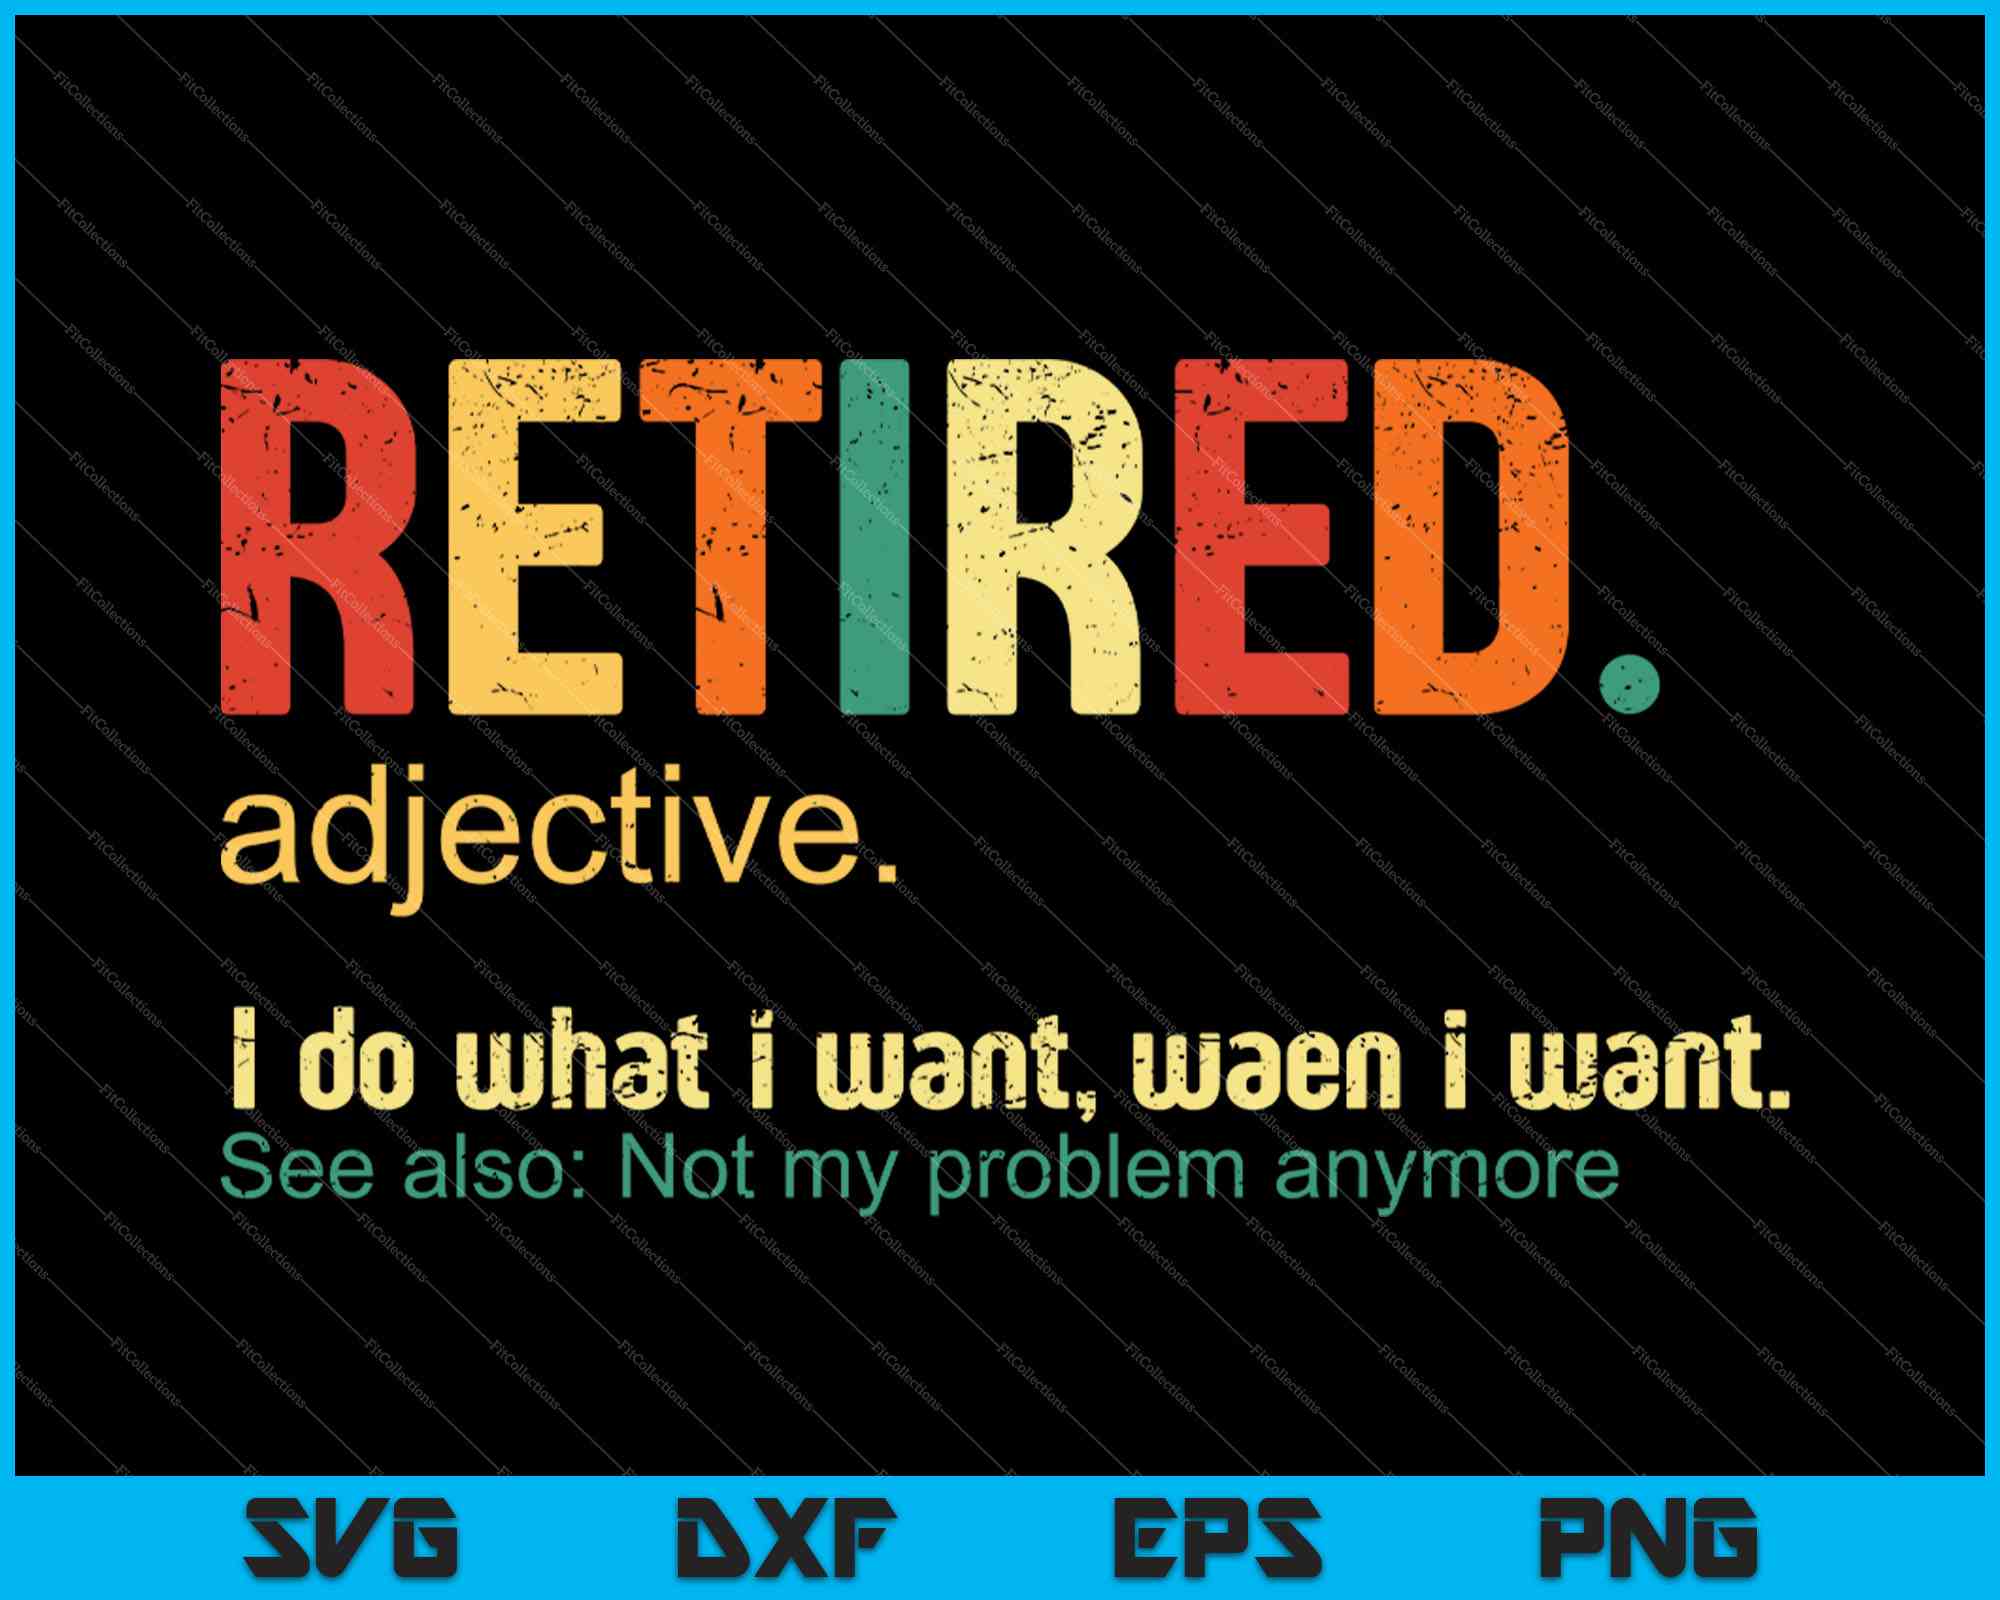 RetireddefinitionFunnyRetirementGiftTshirt01